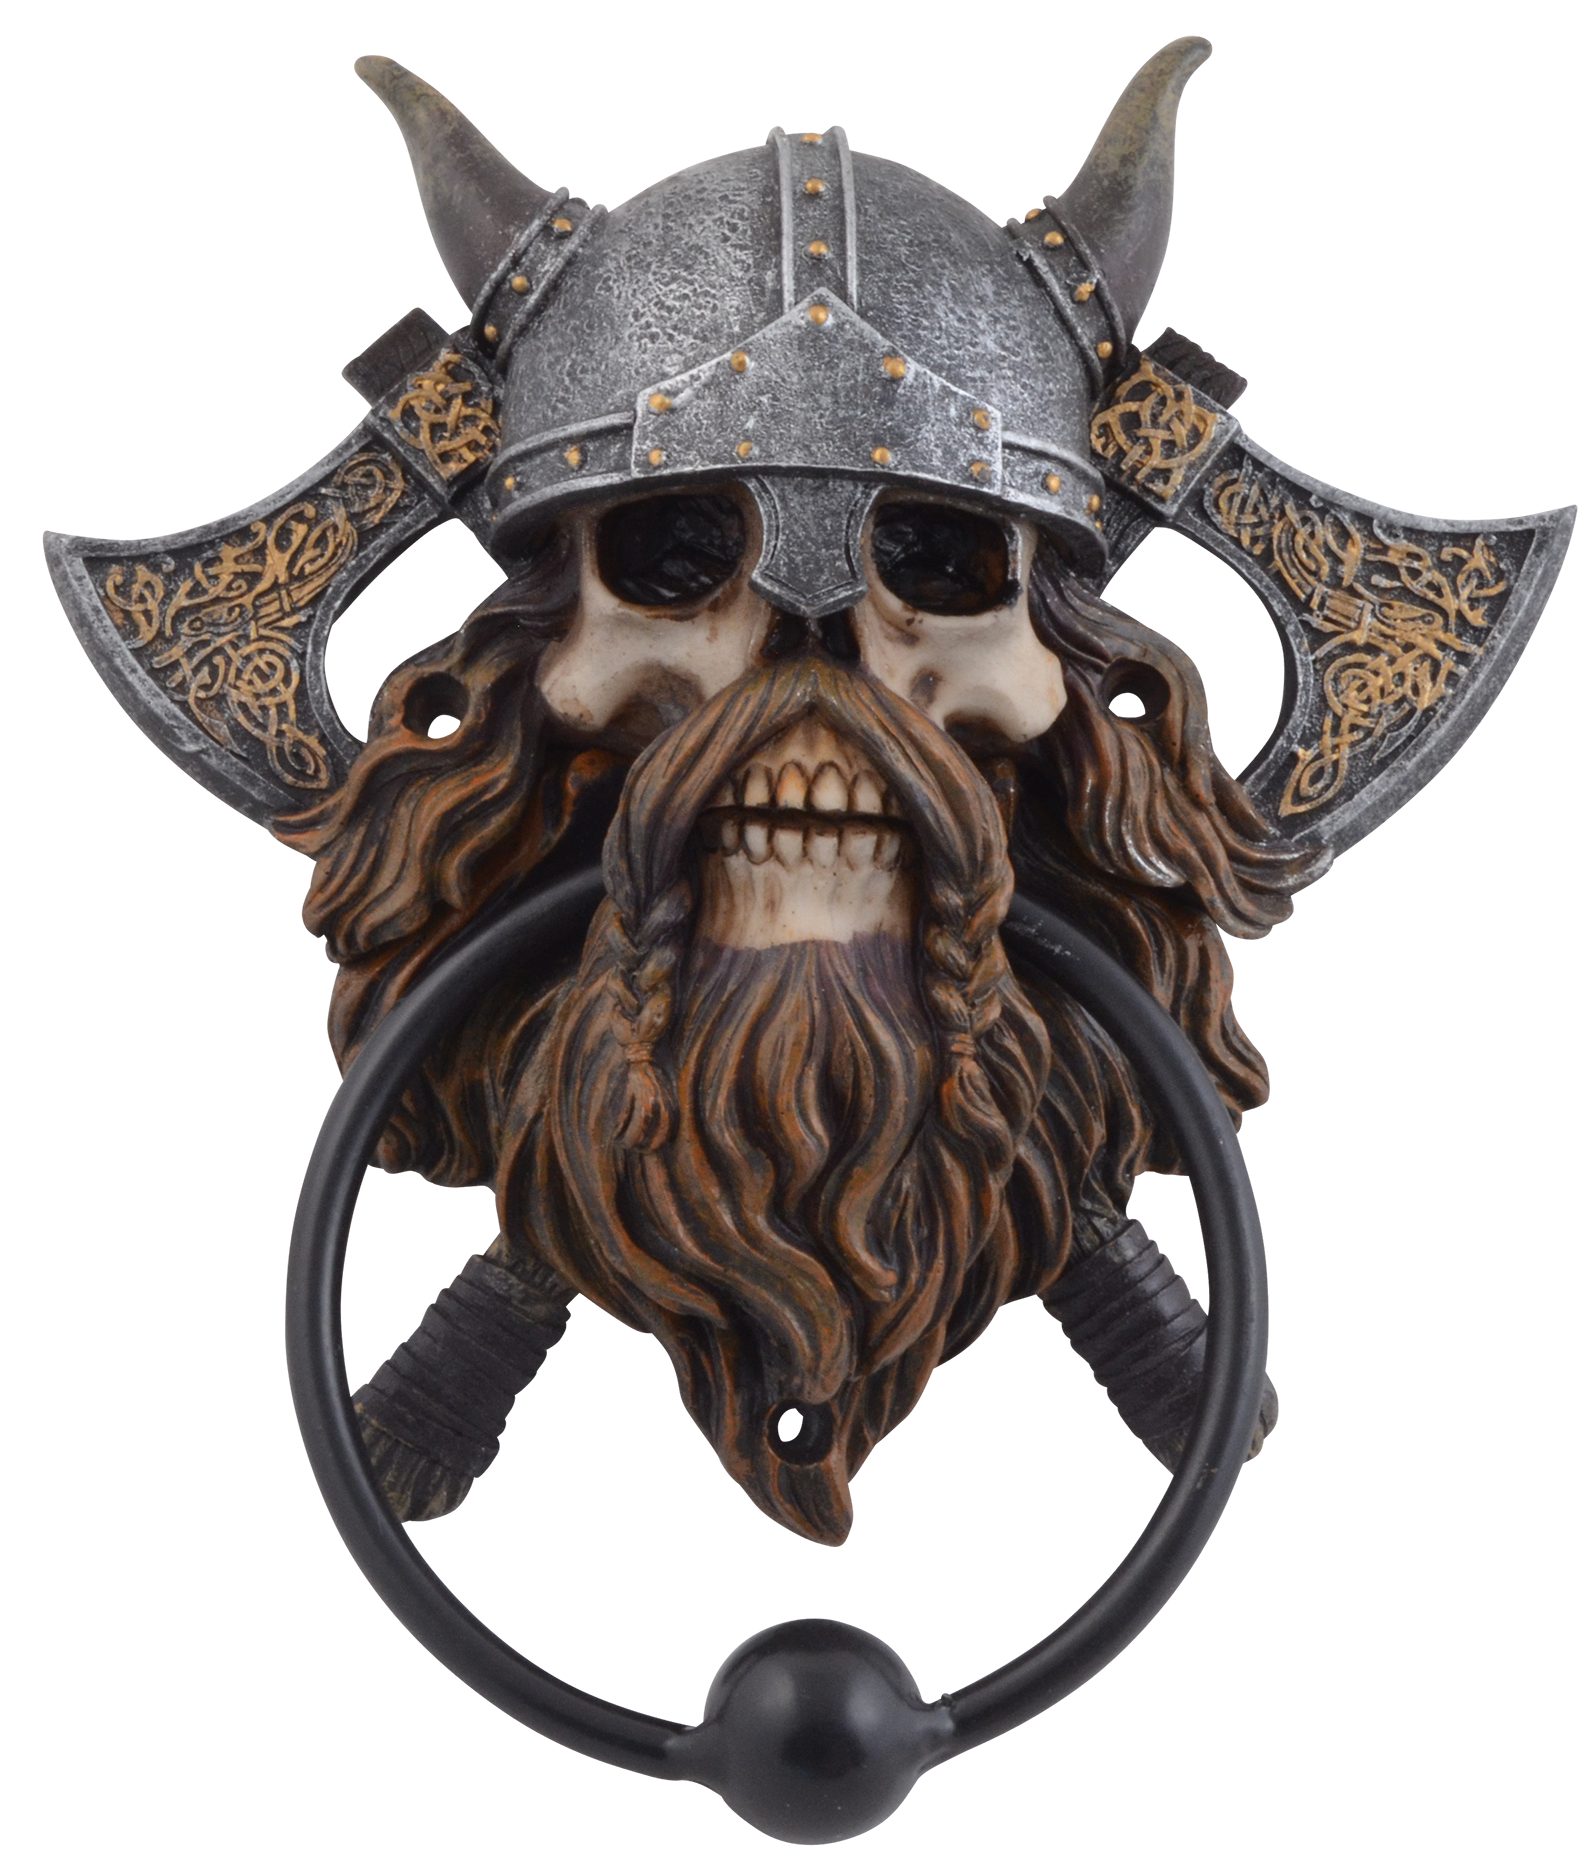 Vogler direct Gmbh Türbeschlag Türklopfer "Vikings never die", Größe: LxBxH ca. 15x5x18 cm, Klopfer aus Metall